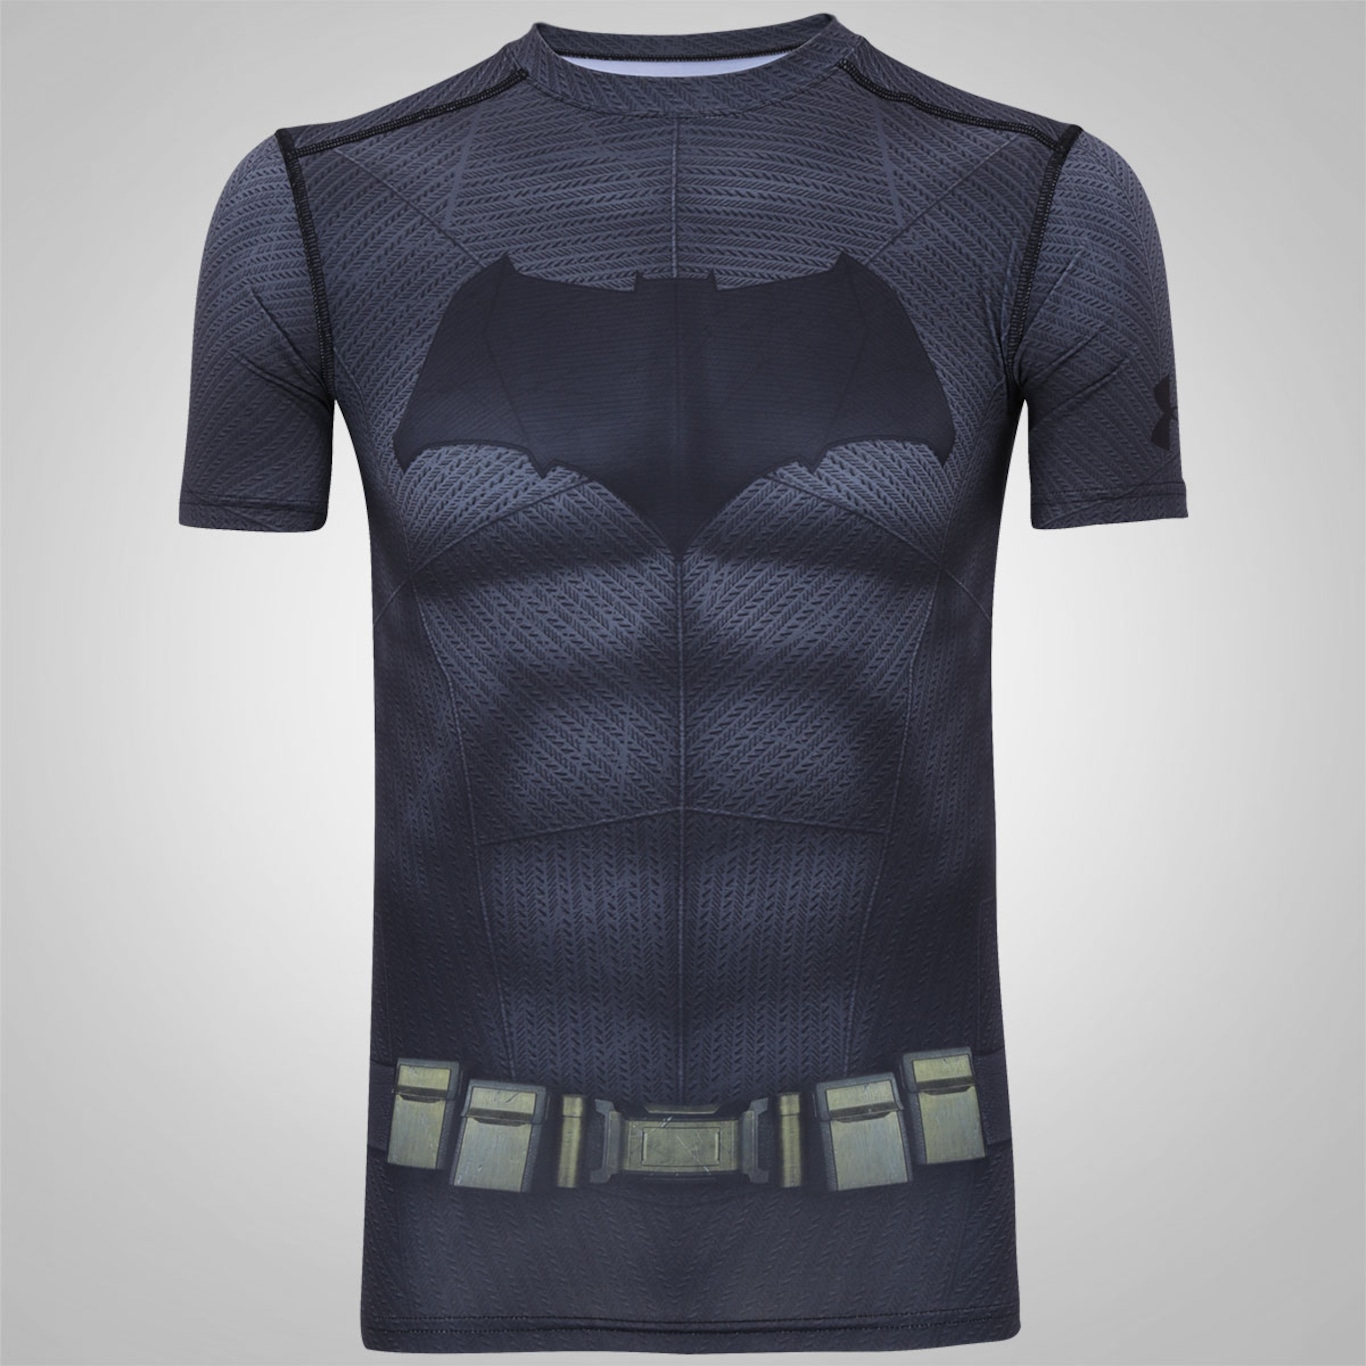 Camiseta de Compressão Under Armour Superman Masculina